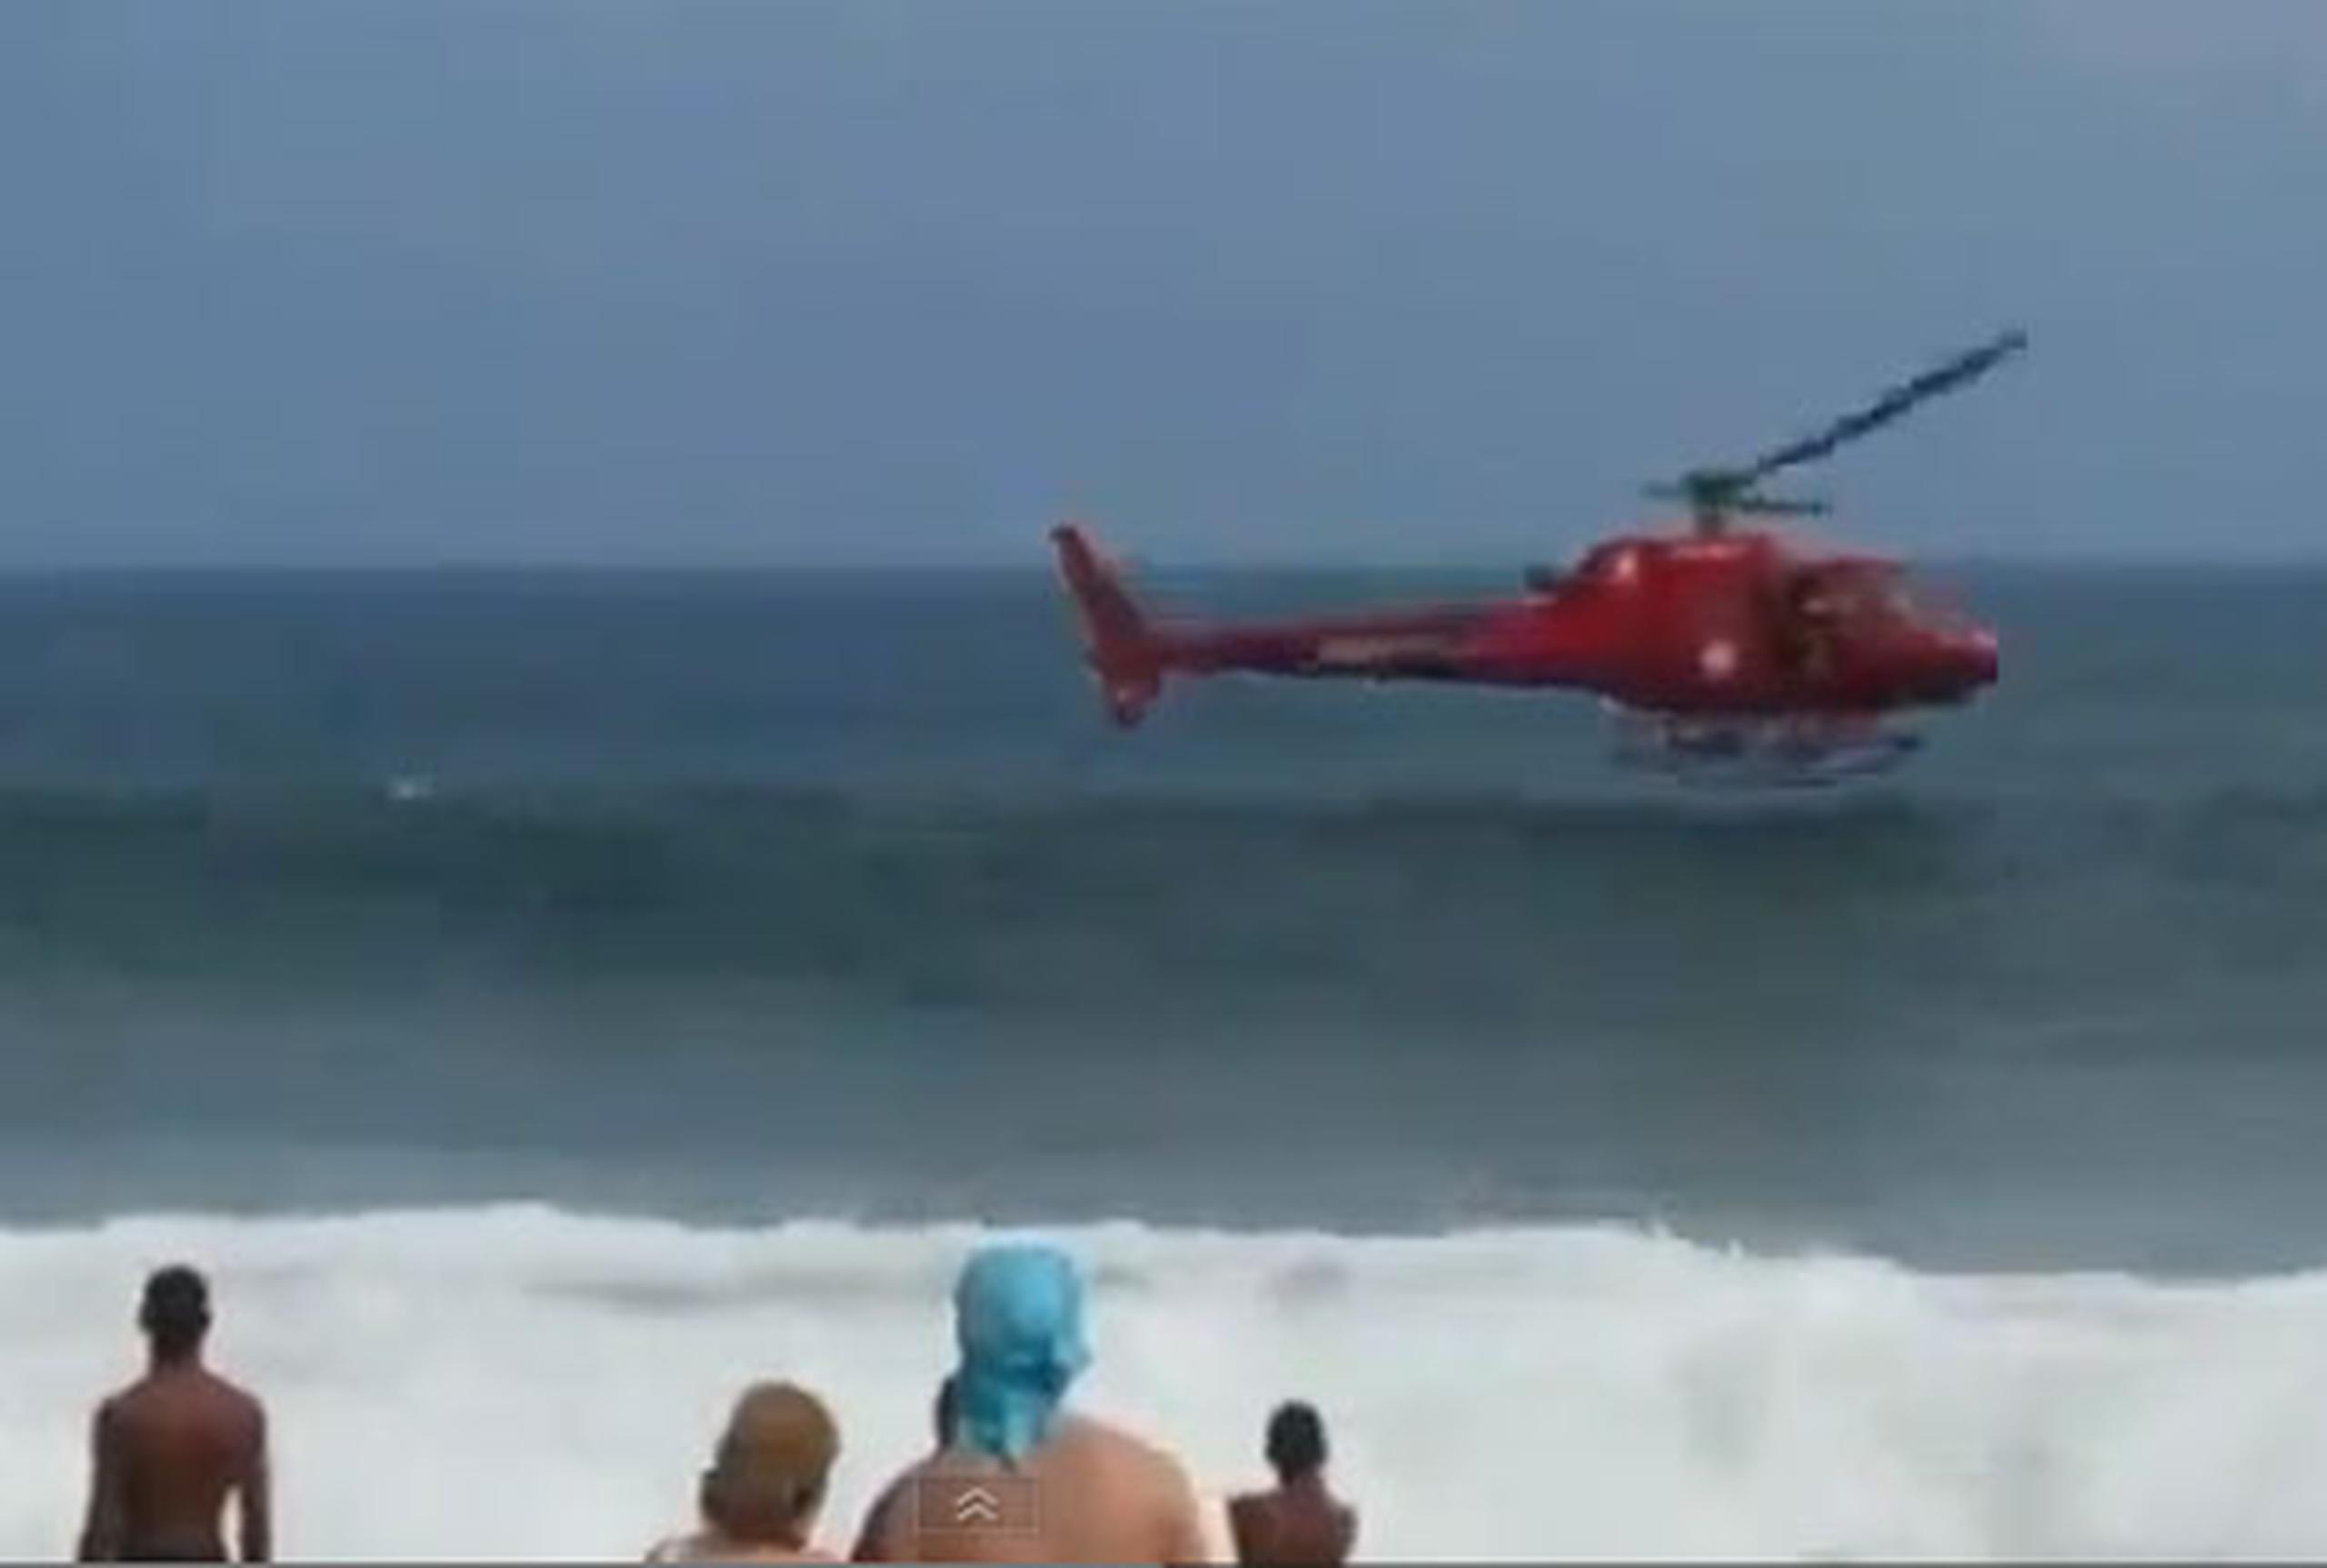 El aparato se hundió a pocos metros de la considerada playa más famosa de Brasil y sus cuatro tripulantes alcanzaron a abandonar la aeronave con vida. (Youtube)